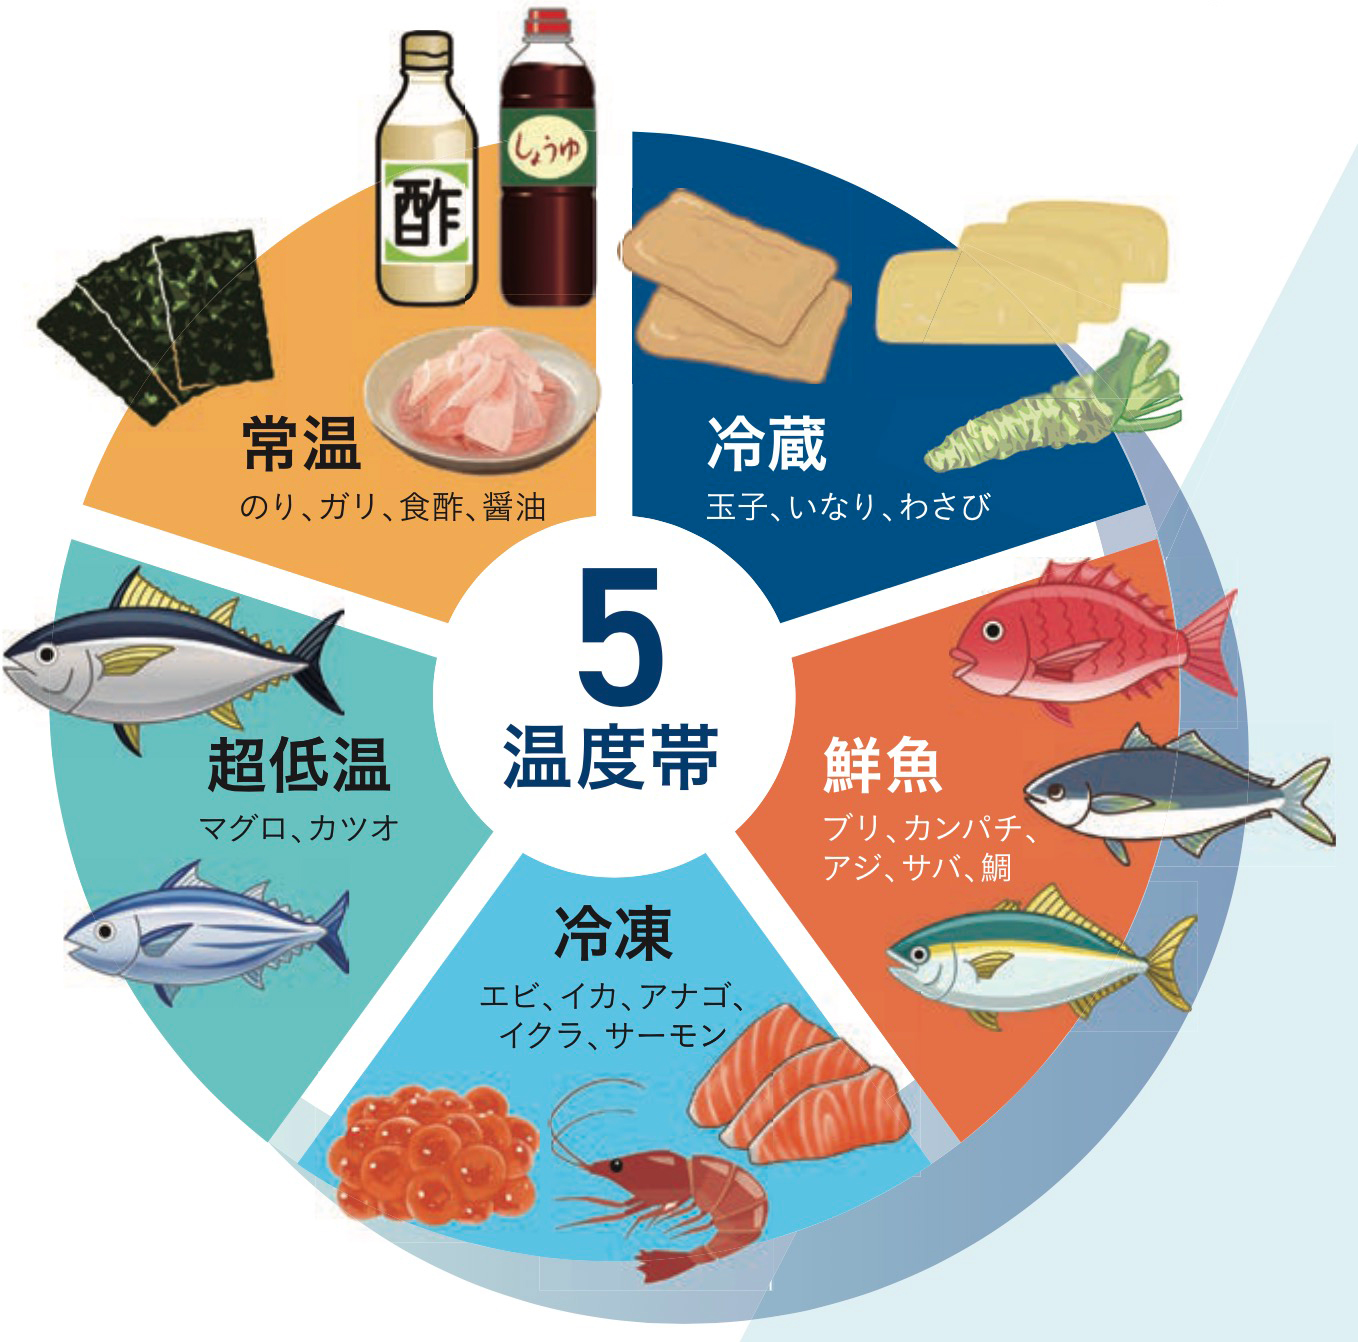 4, 寿司ネタやすべての商品は5つの温度帯でしっかり管理